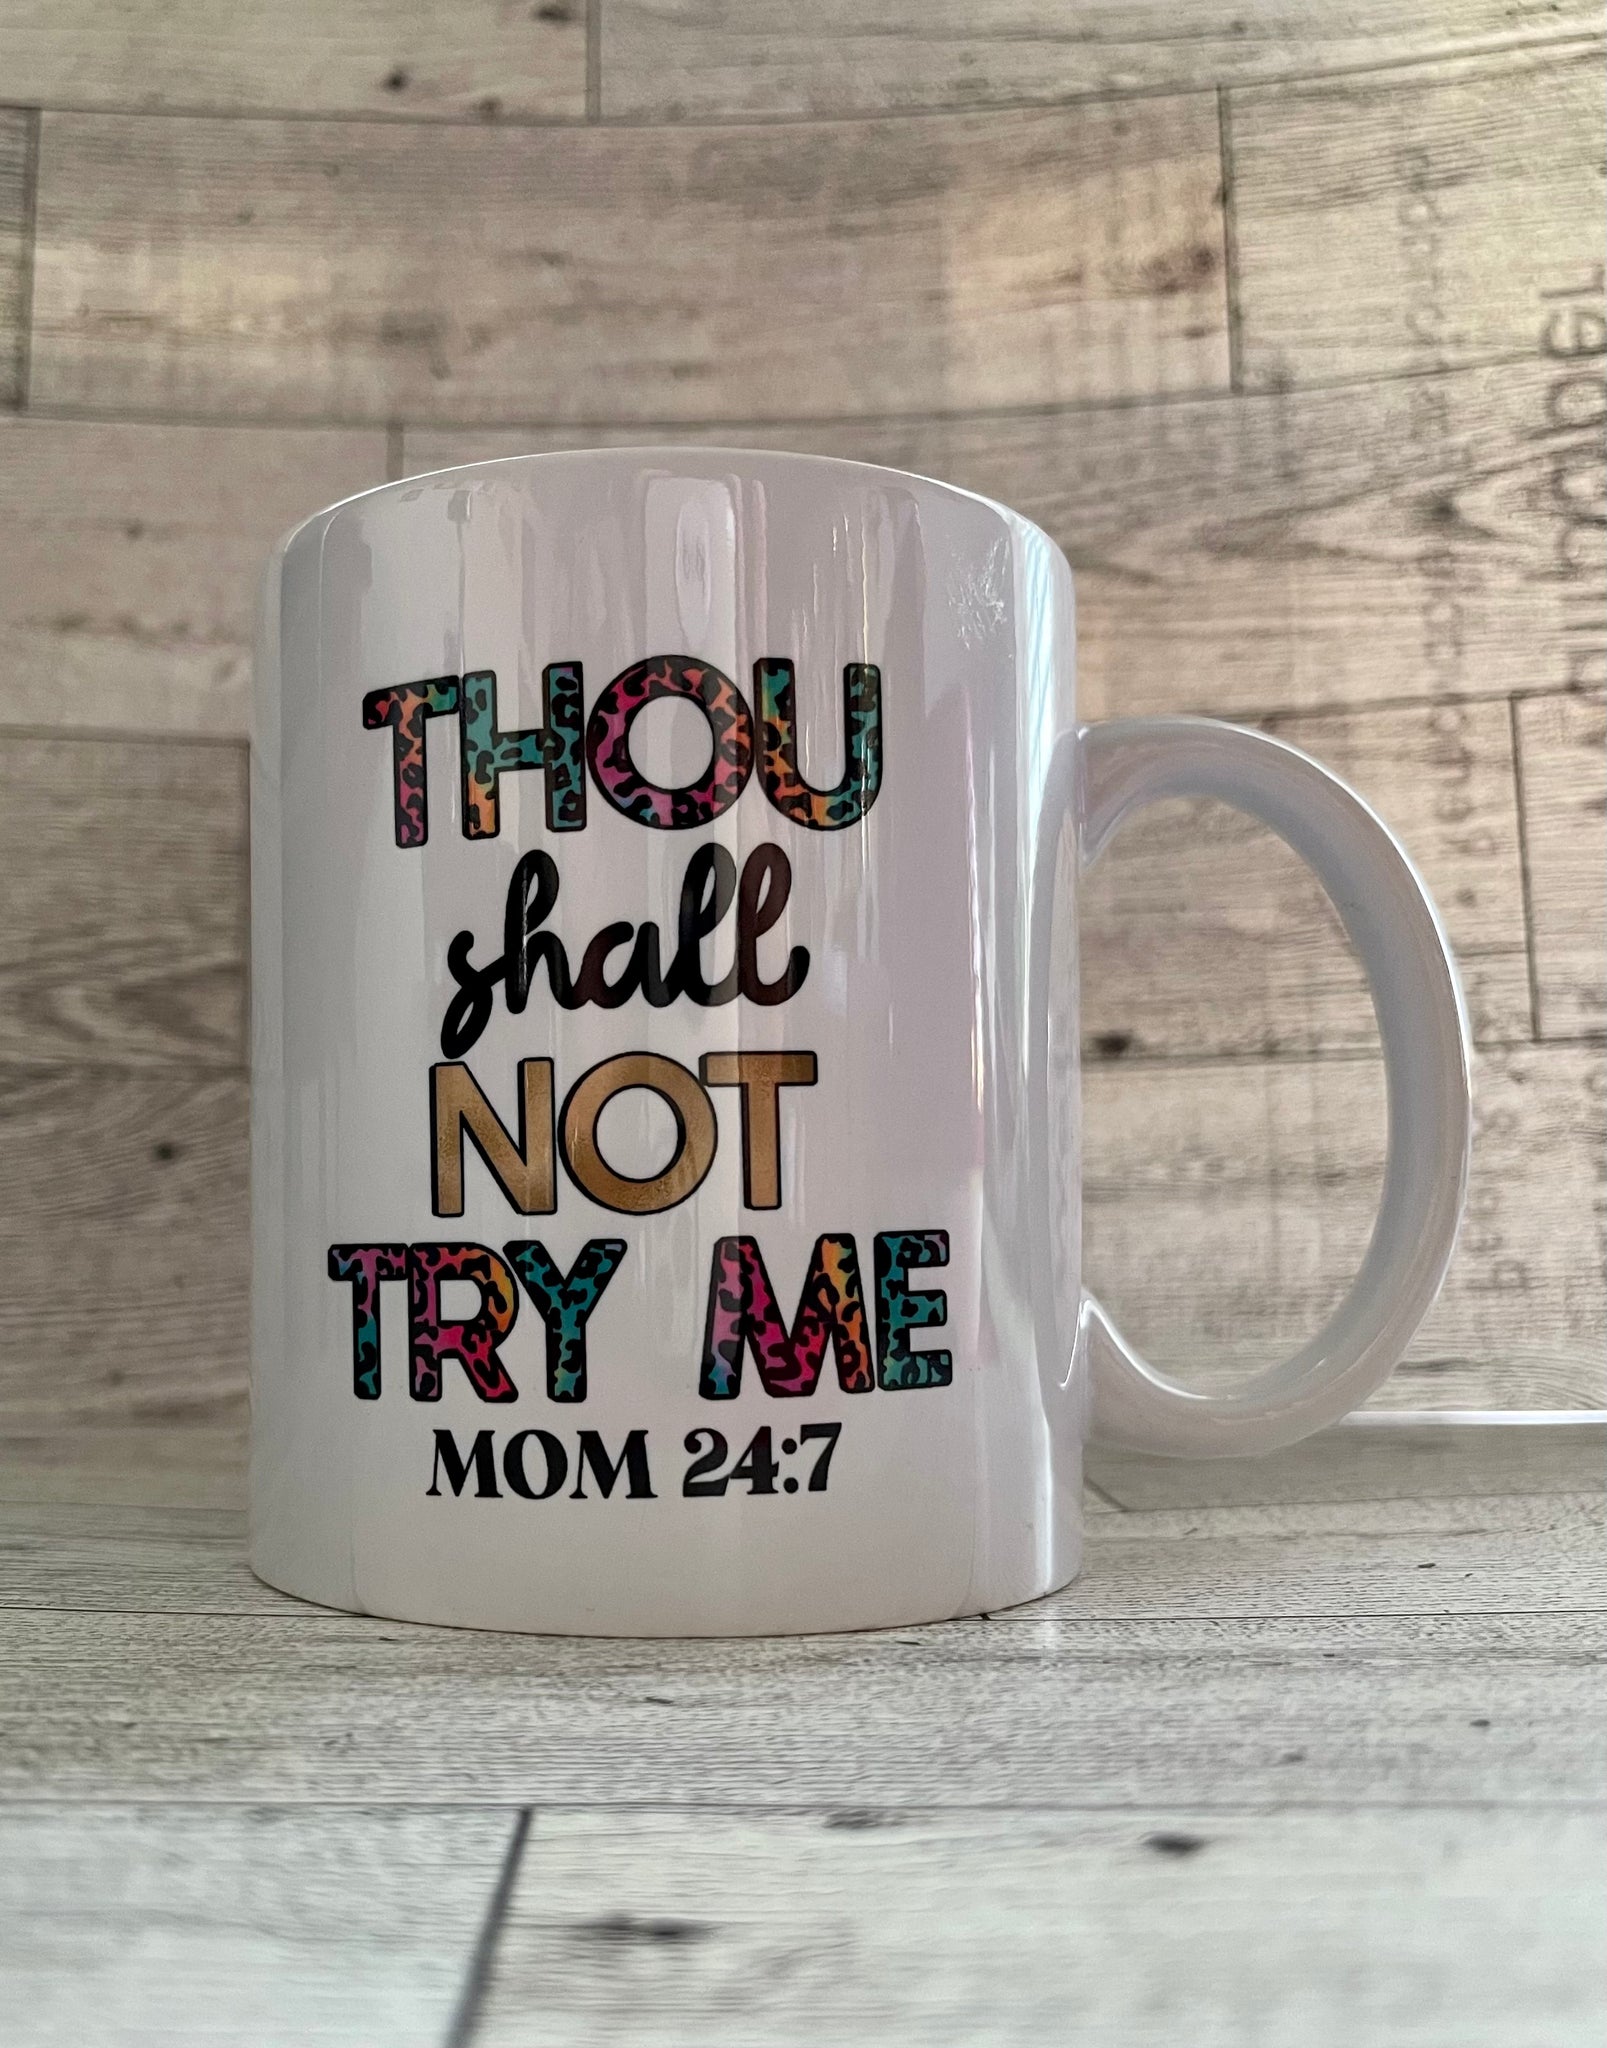 Thought shall not try me mom 24:7 11 Oz ceramic mug